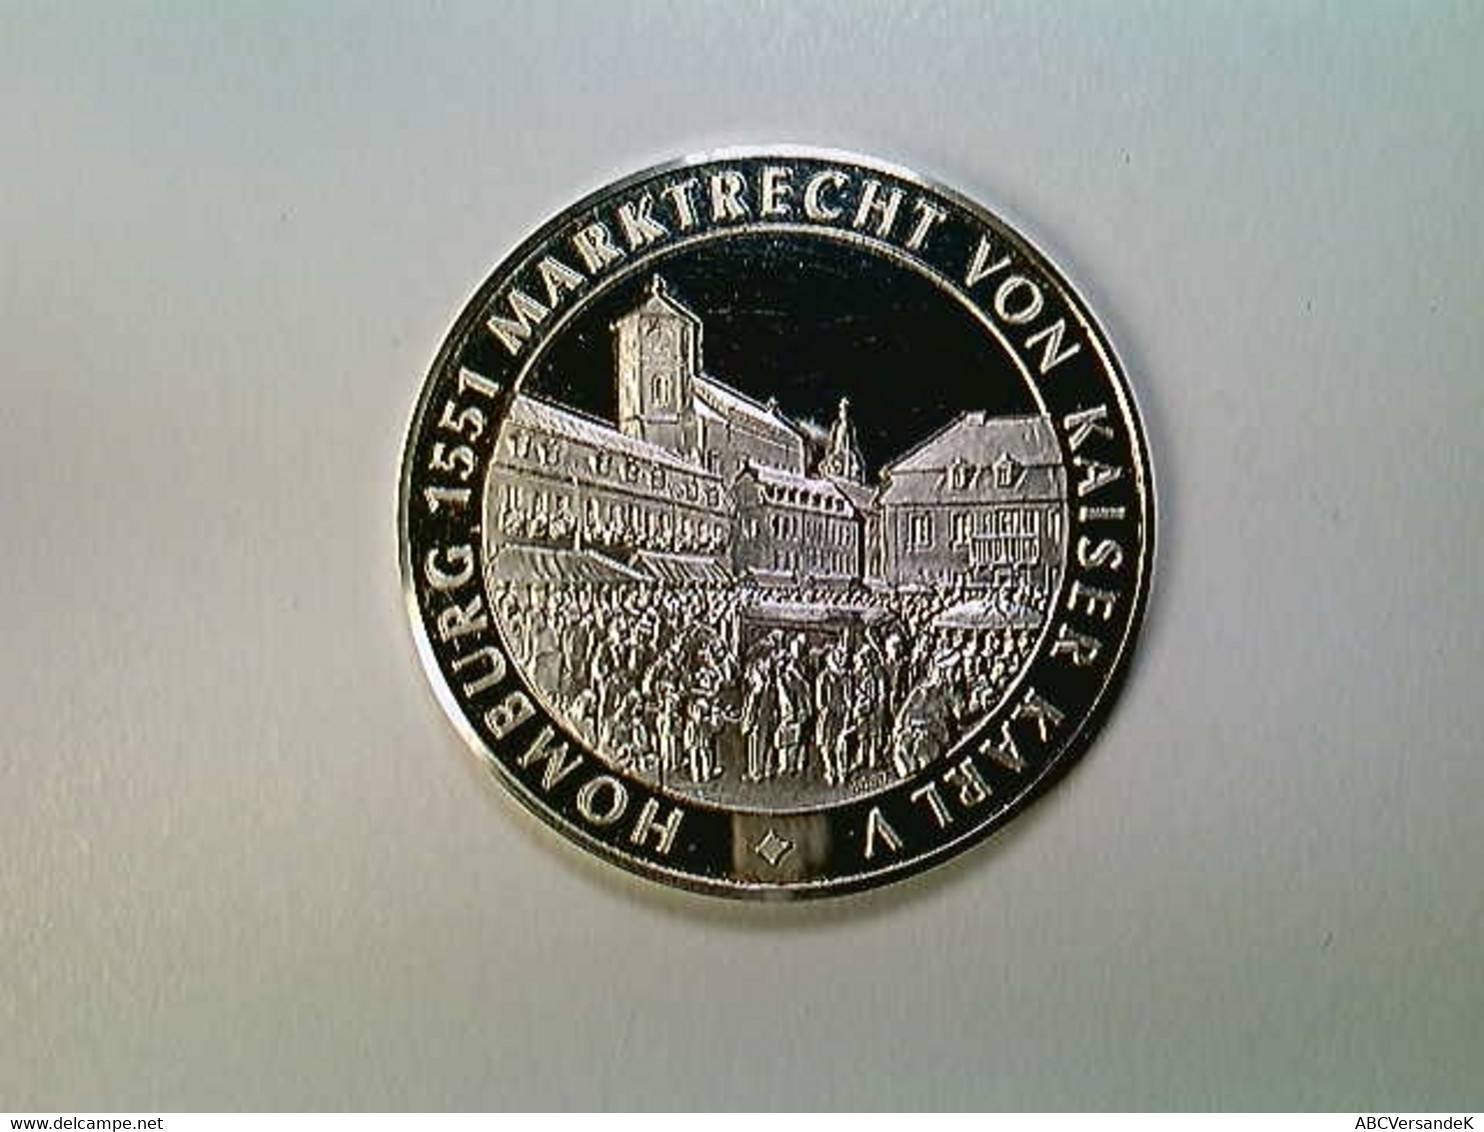 Medaille Homburg 650 Jahre Stadtrecht 1330-1980, Silber 1000 - Numismatique